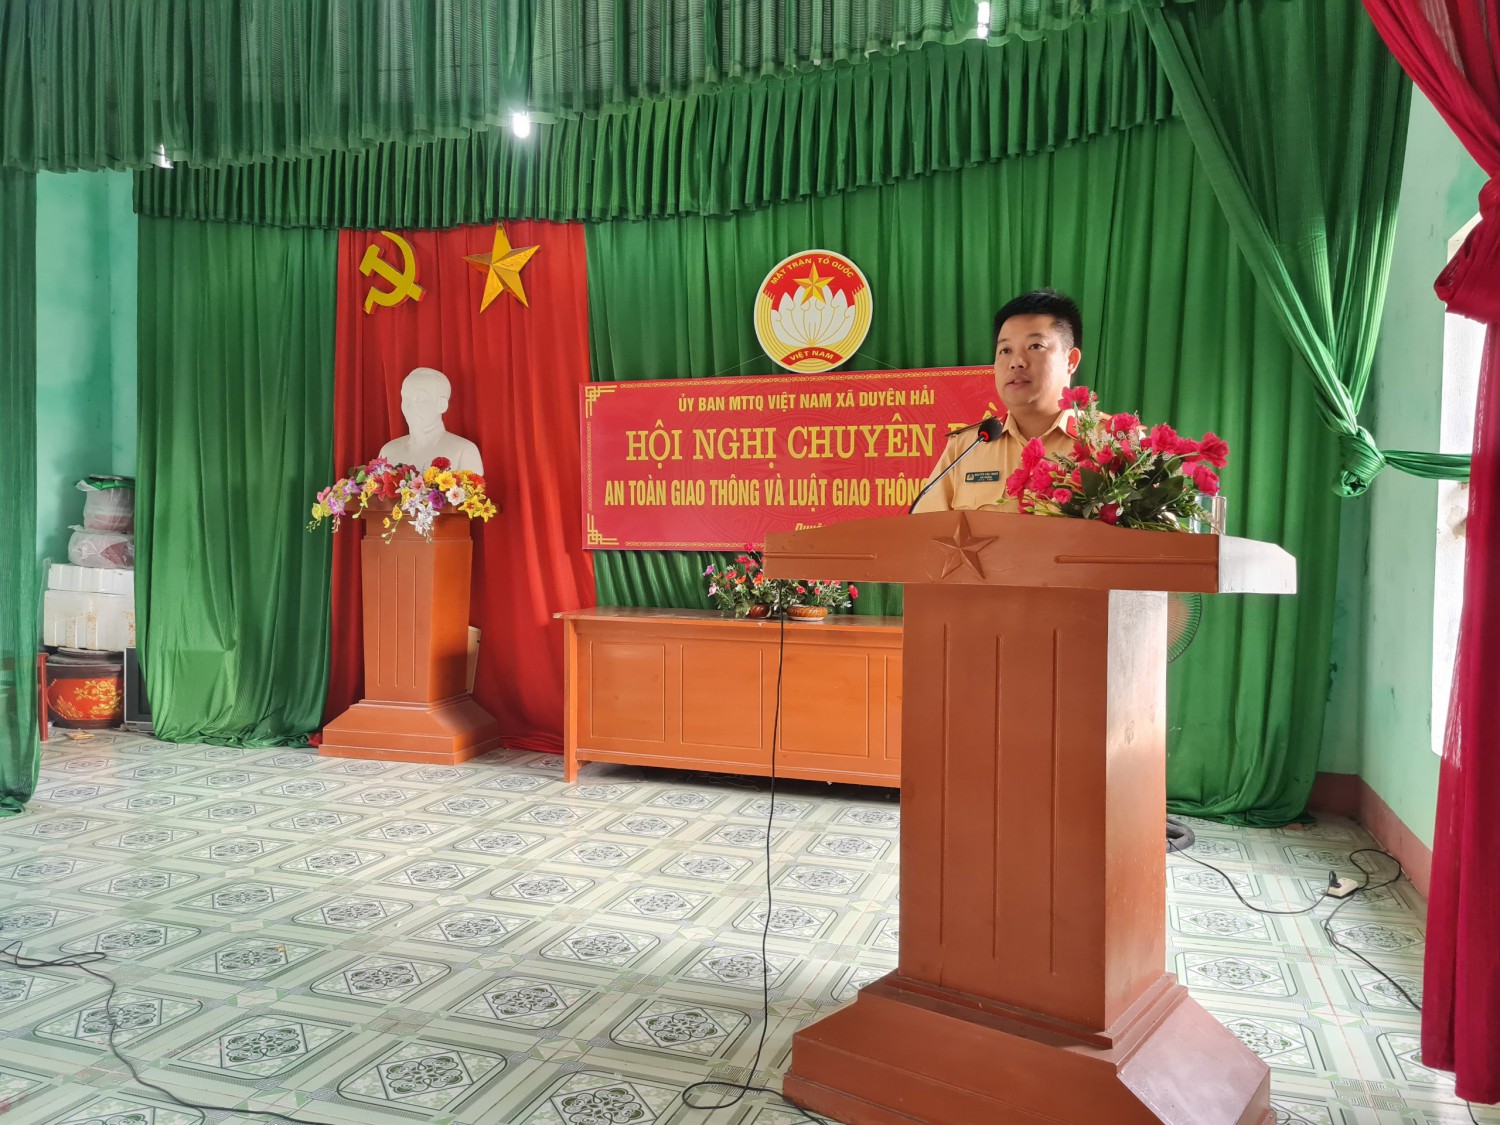 Đồng chí Thiếu tá Nguyễn Văn Thuân trực tiếp truyền đạt nội dung chuyên đề An toàn giao thông